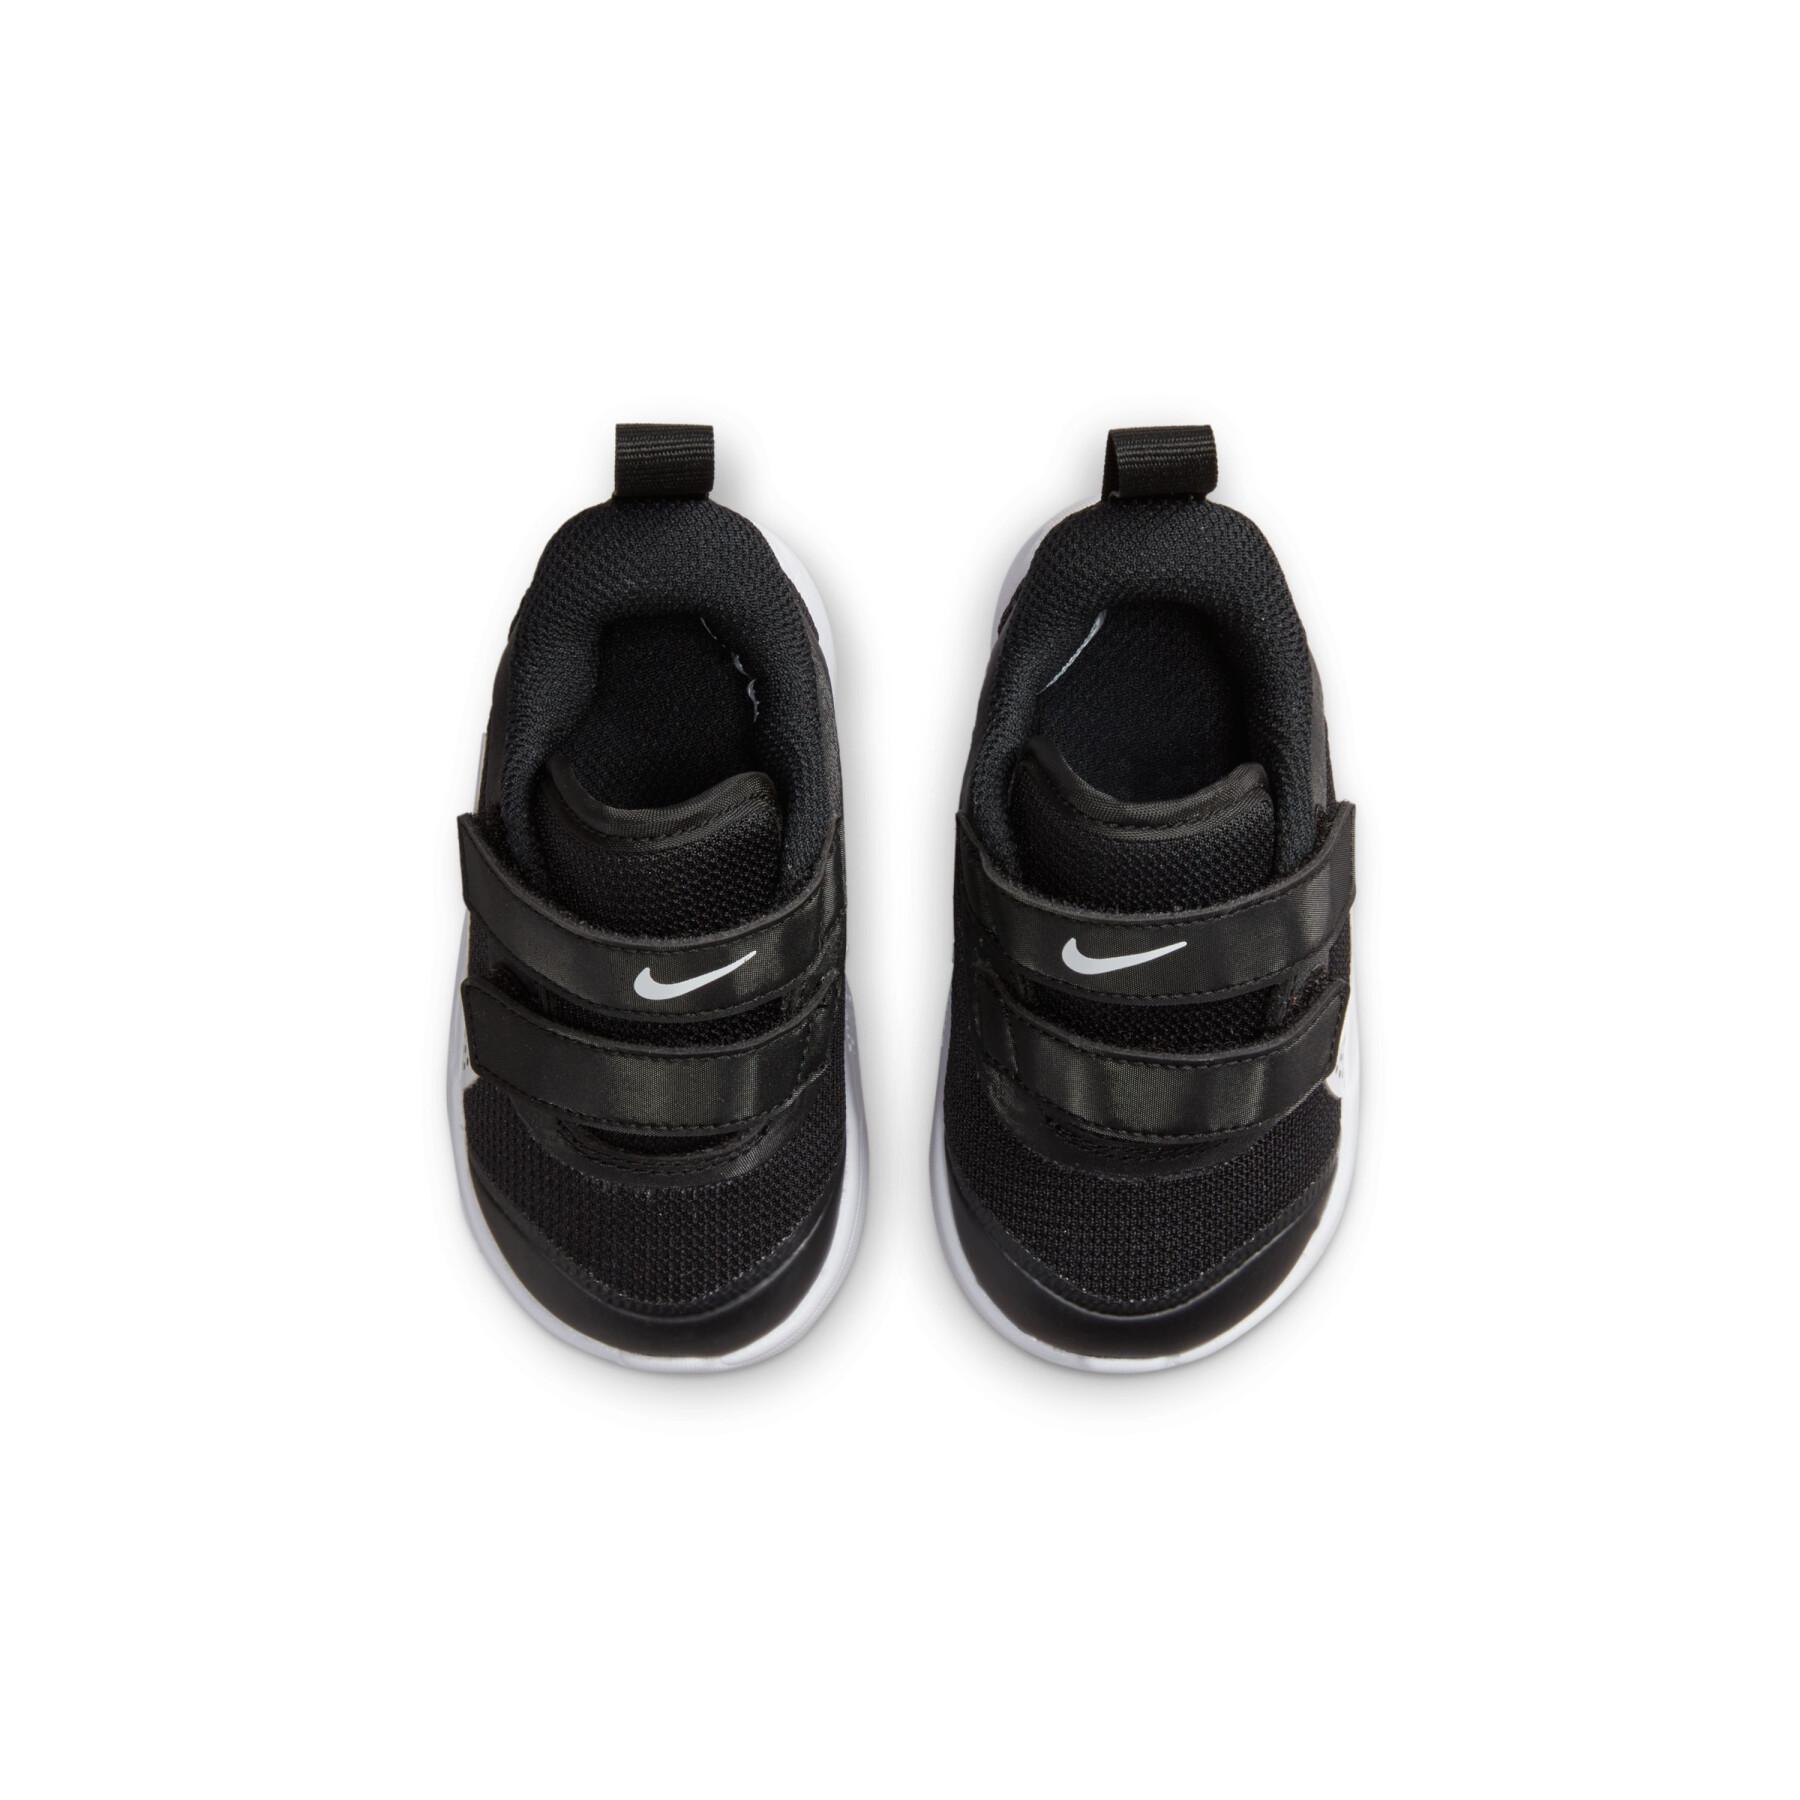 Children's sneakers Nike Omni Multi-Court